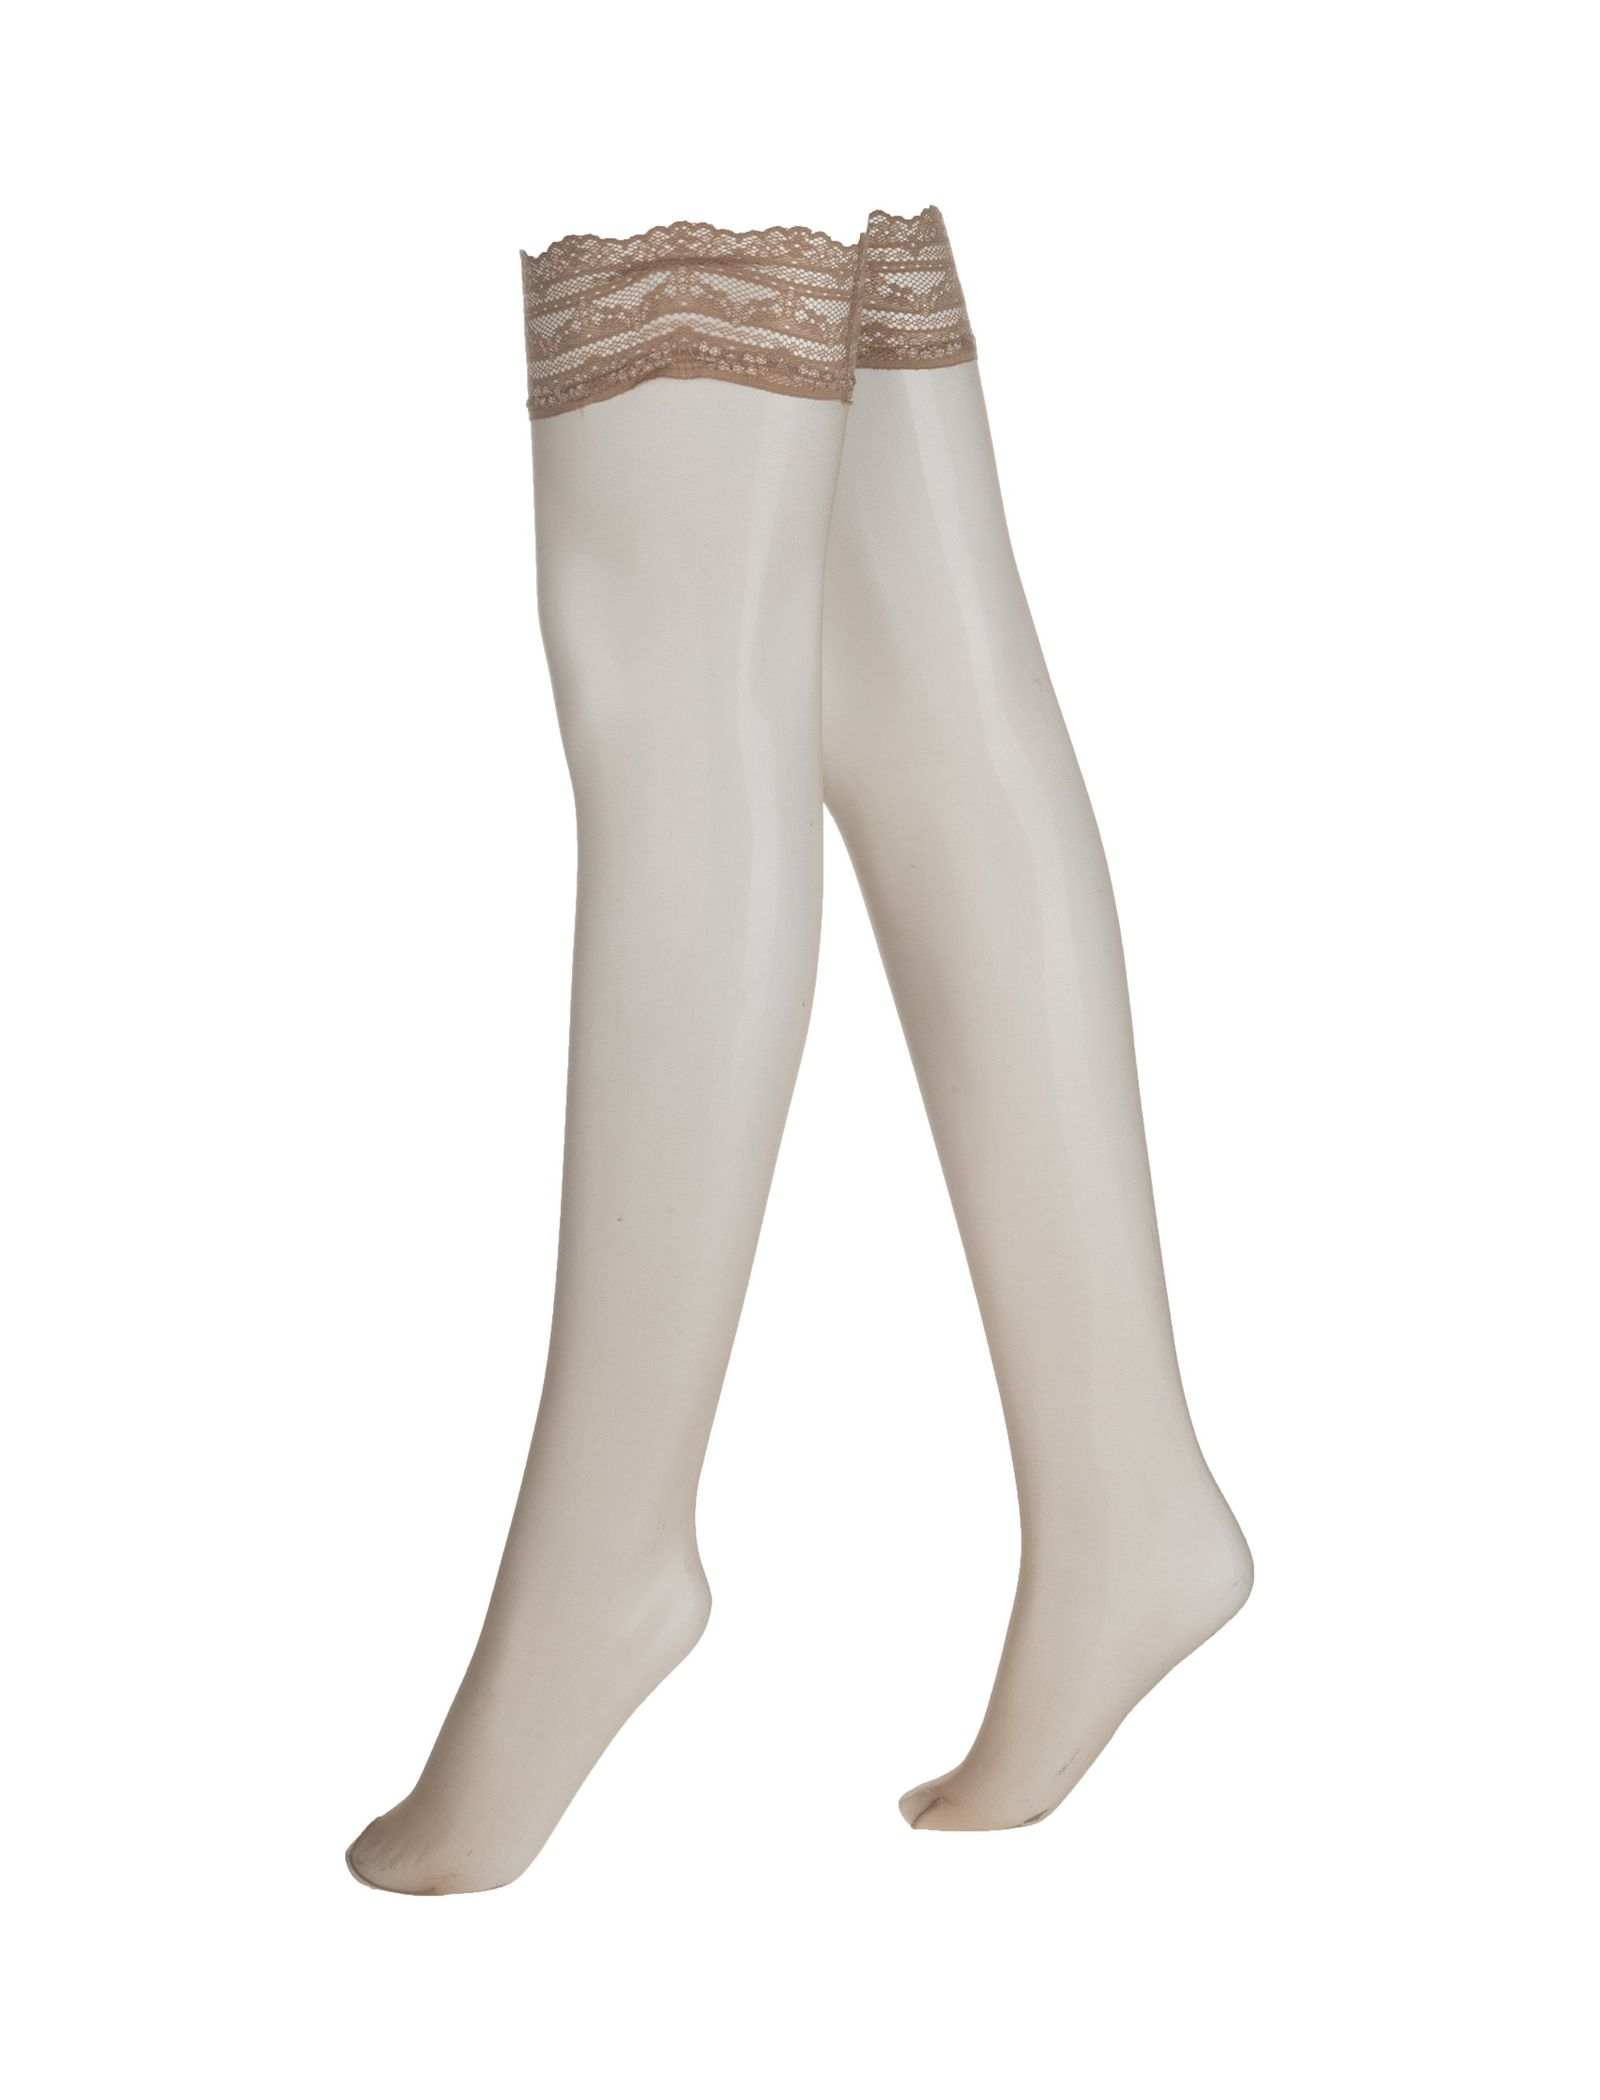 جوراب ساق بلند زنانه - اتام - کرم - 3